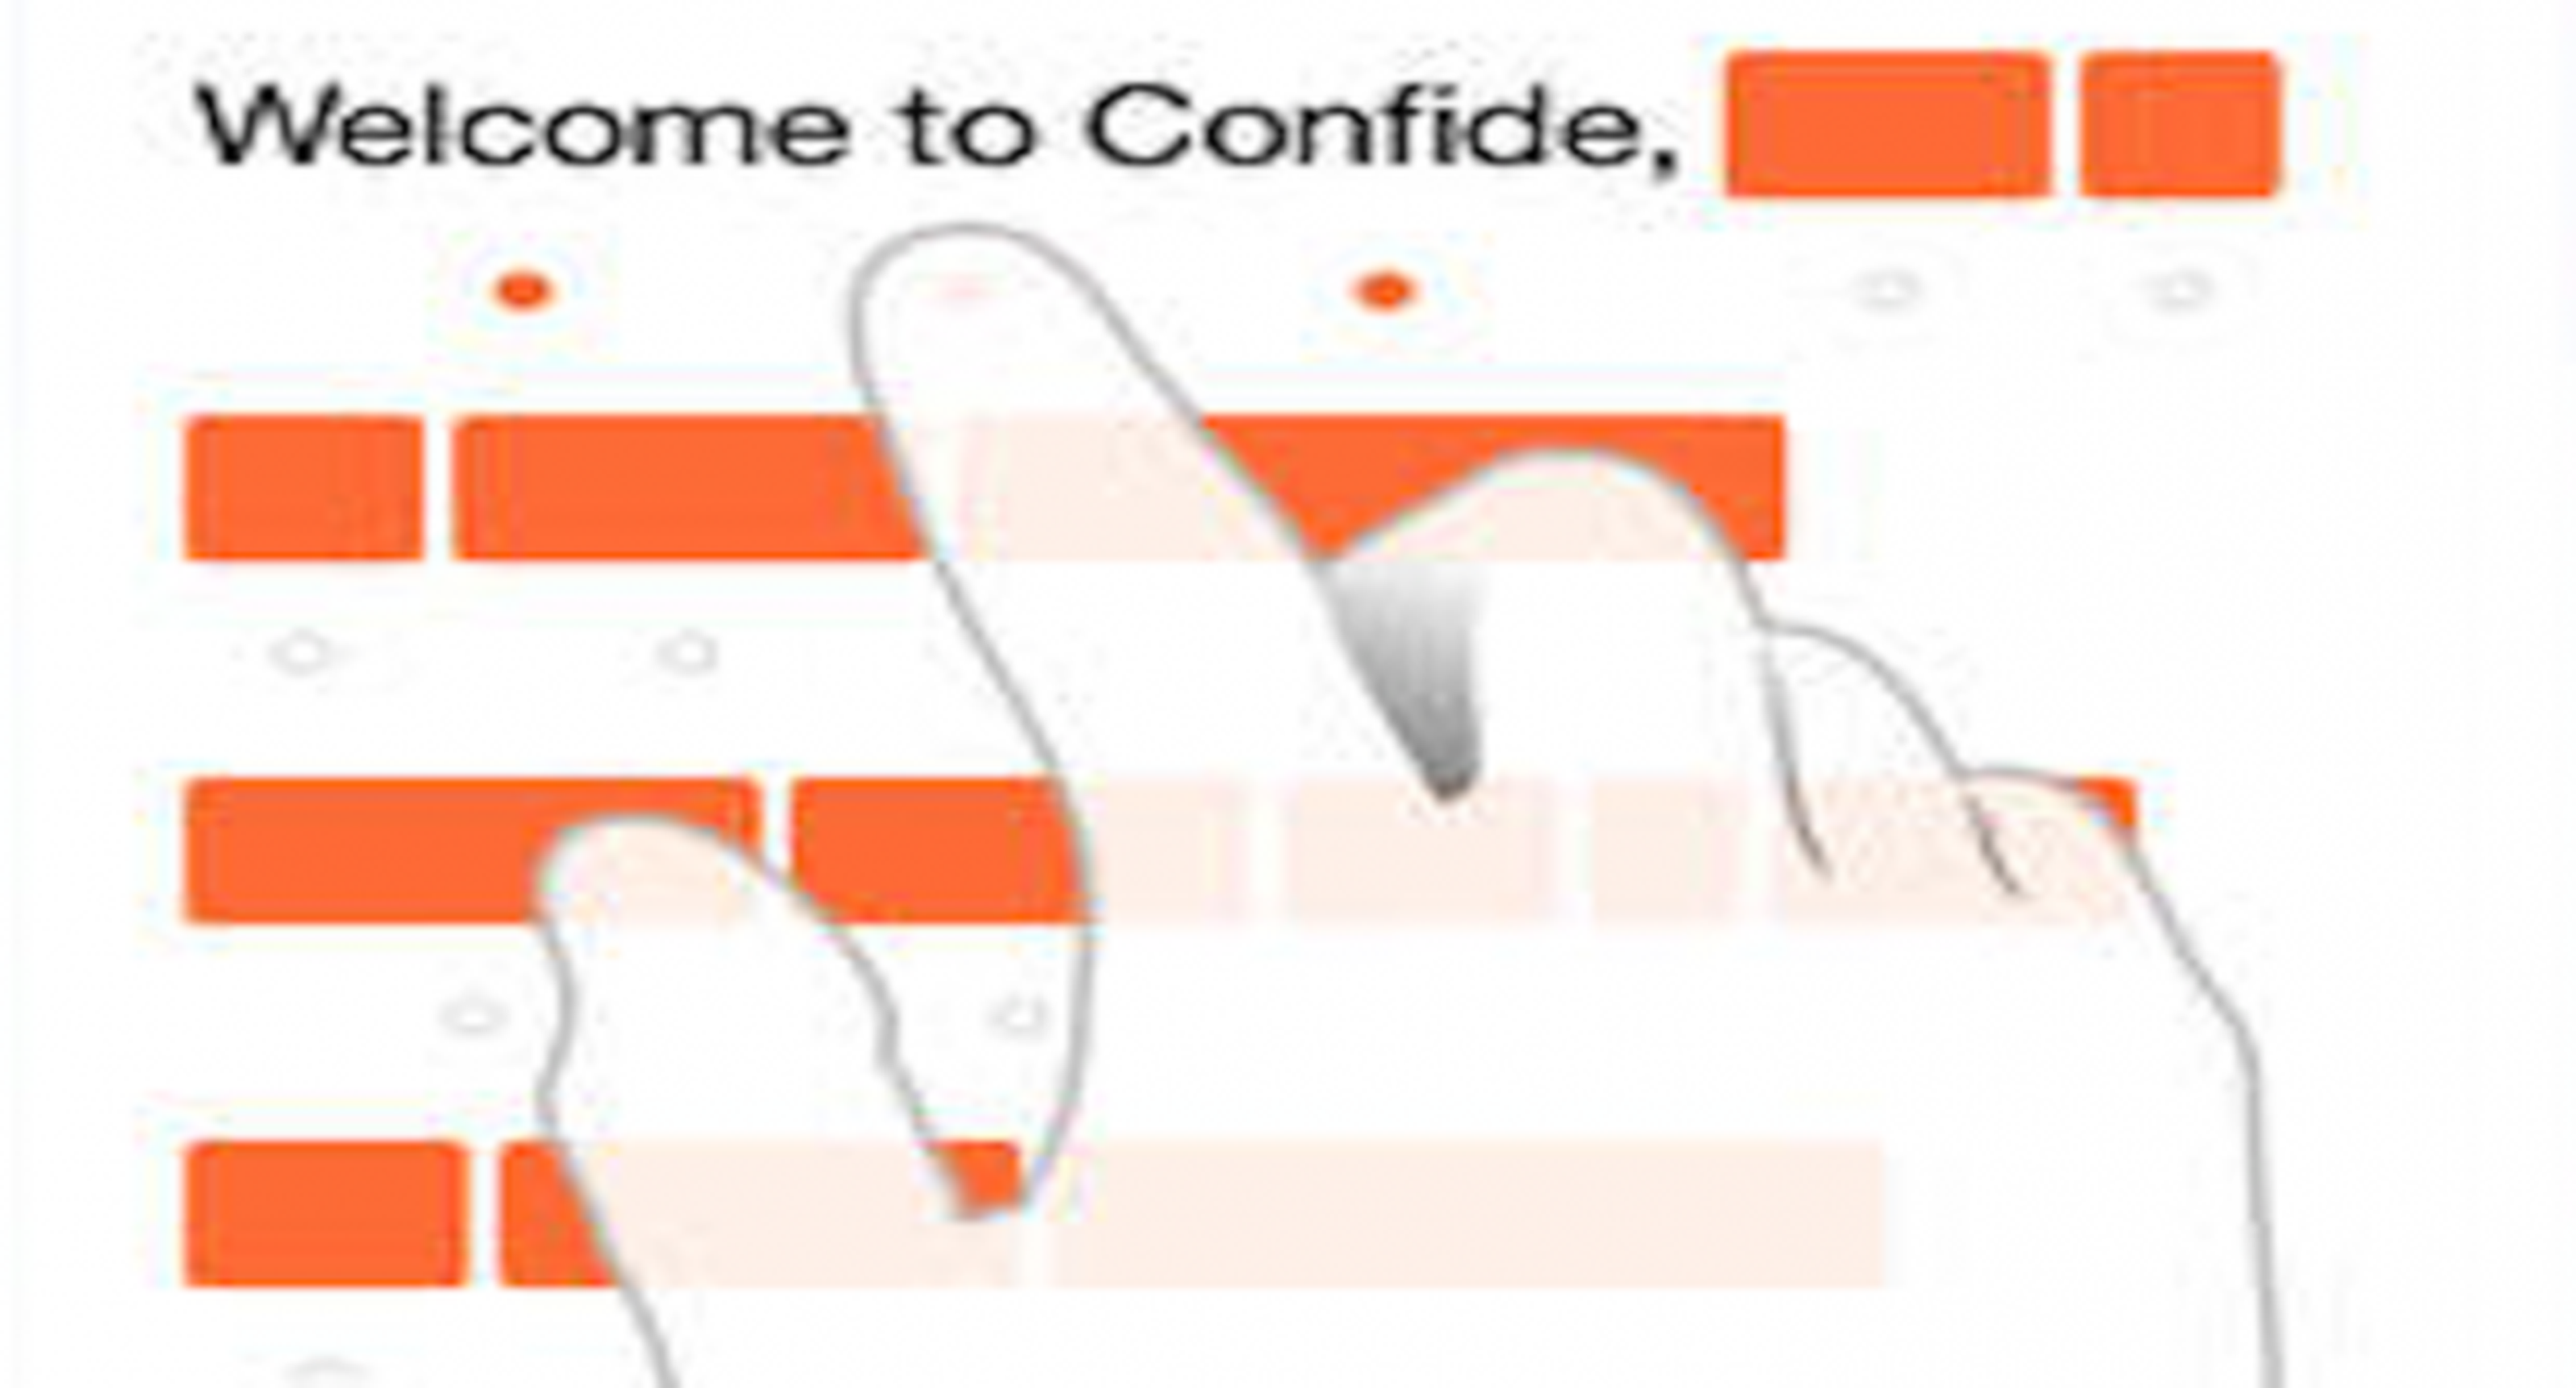 Confide, una app que envía mensajes que se autodrestuyen